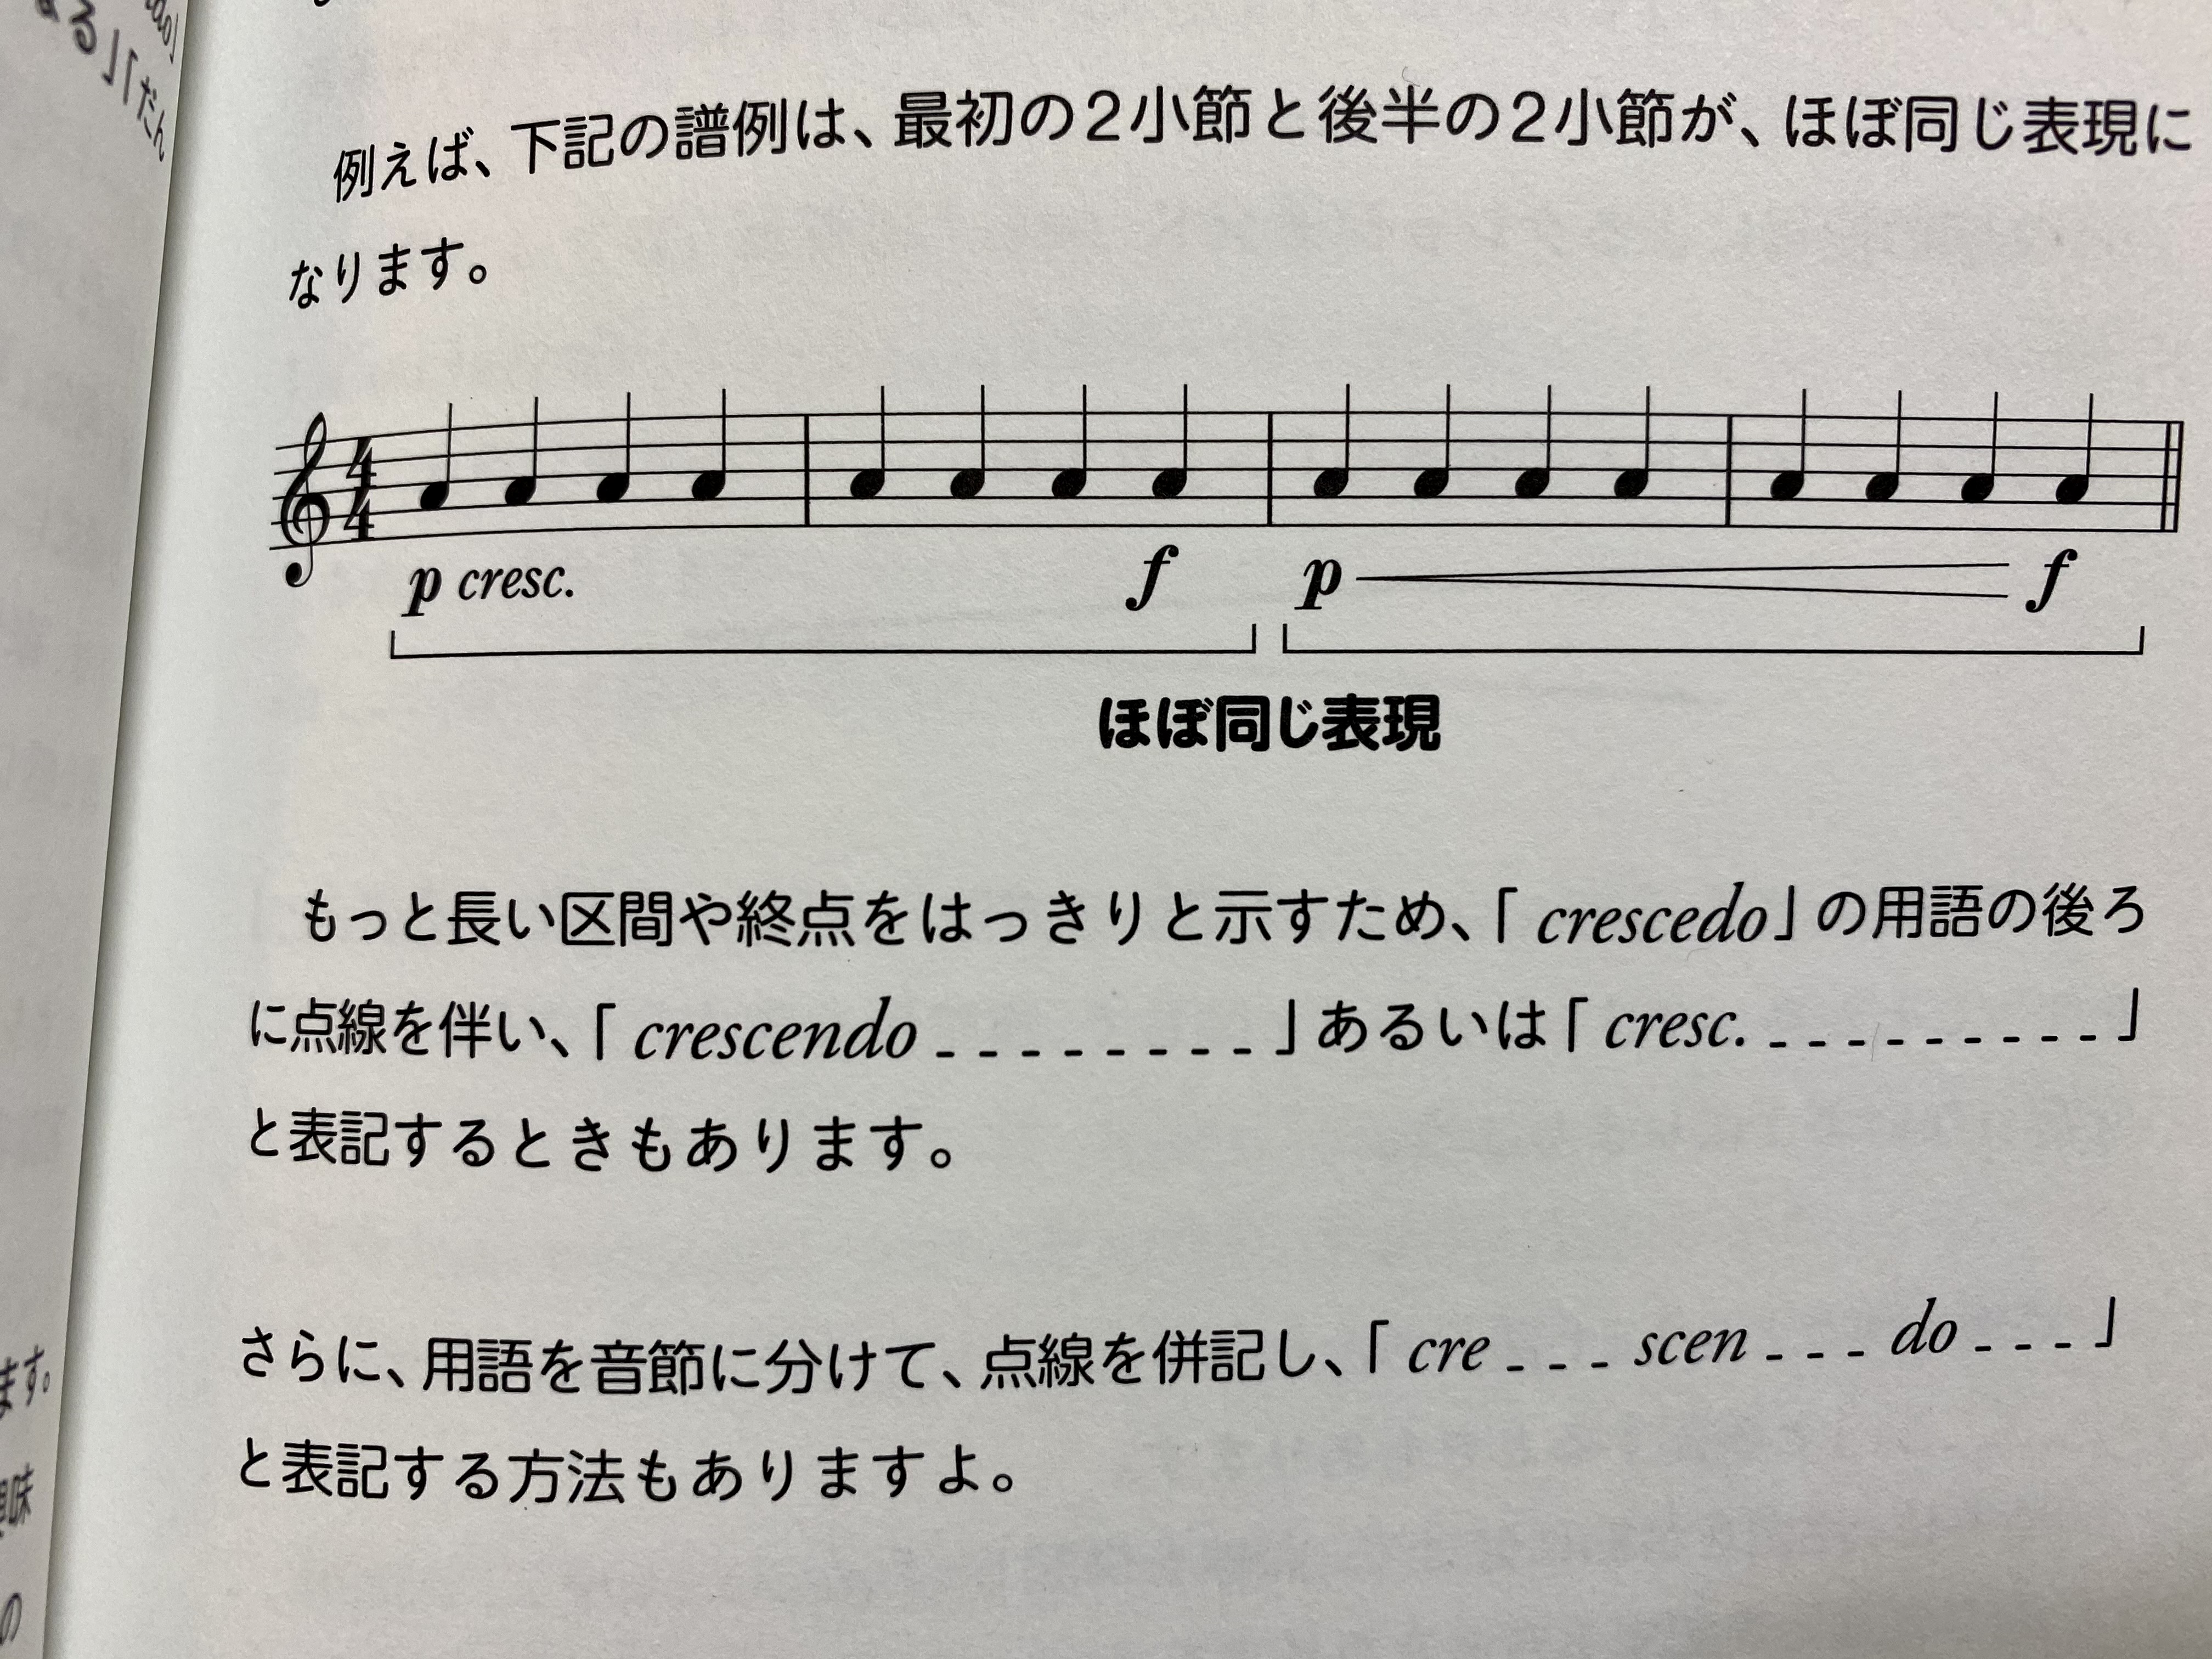 侘美秀俊 Hidetoshi Takumi H T Studio の松葉と Cresc の文字の違い よく尋ねられるのだが 使用例としては 範囲 区間の違い 効果に違いはないような 文字の場合は Crescendoの略である ピリオド を忘れずに あと複数にわけて